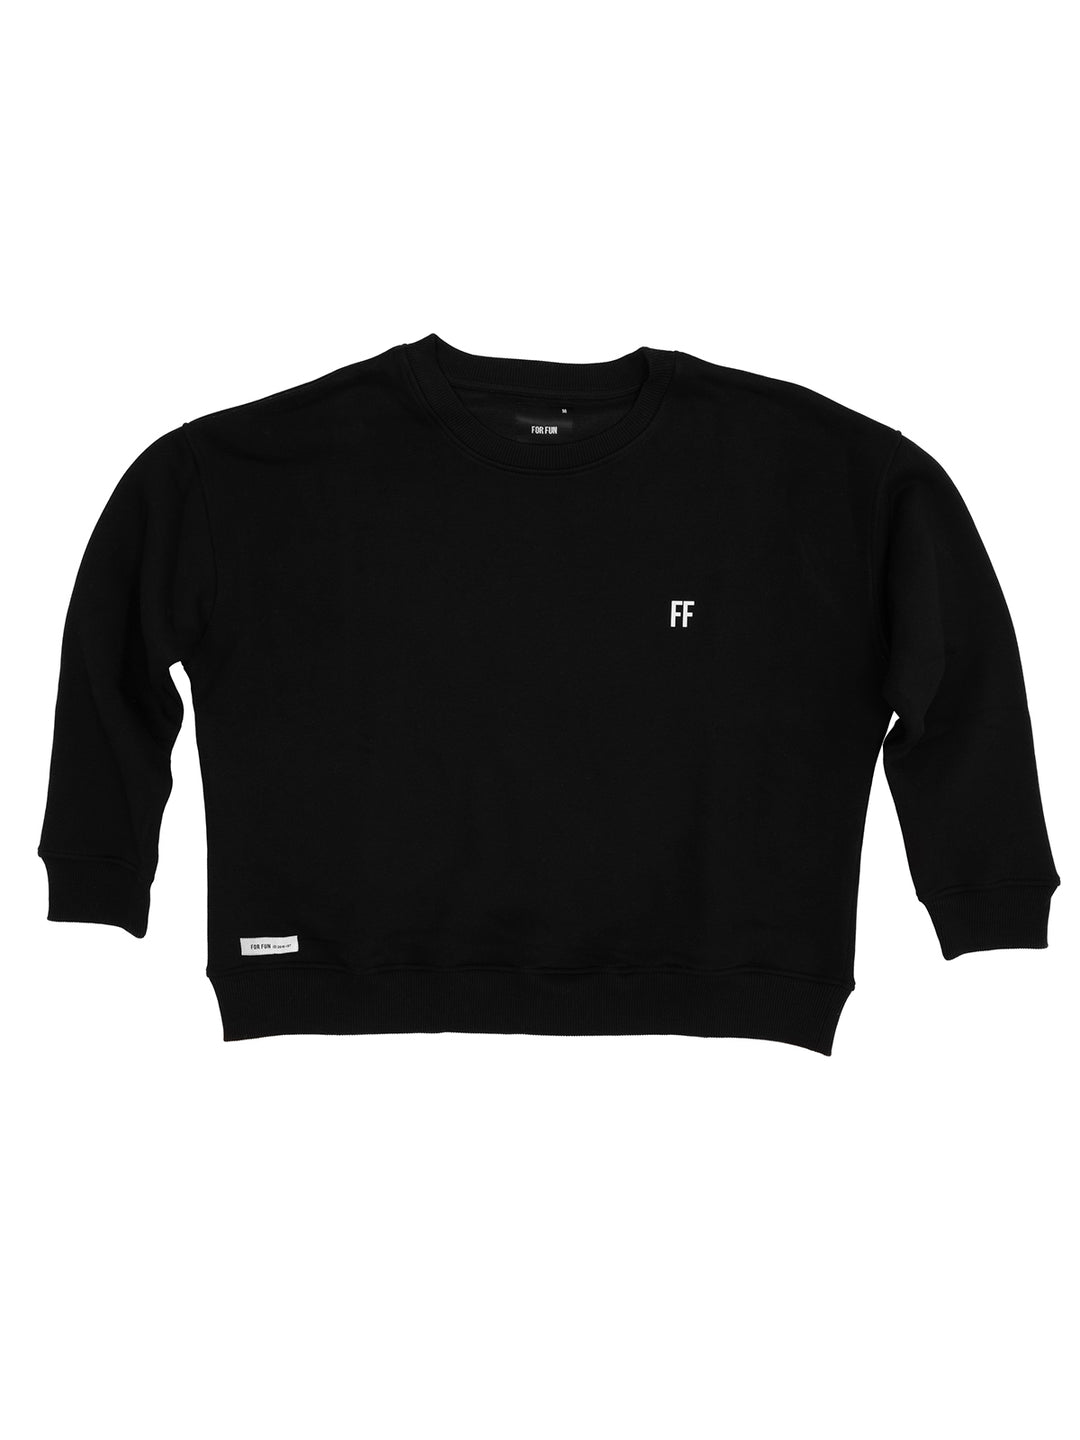 FF / Women's Sweatshirt